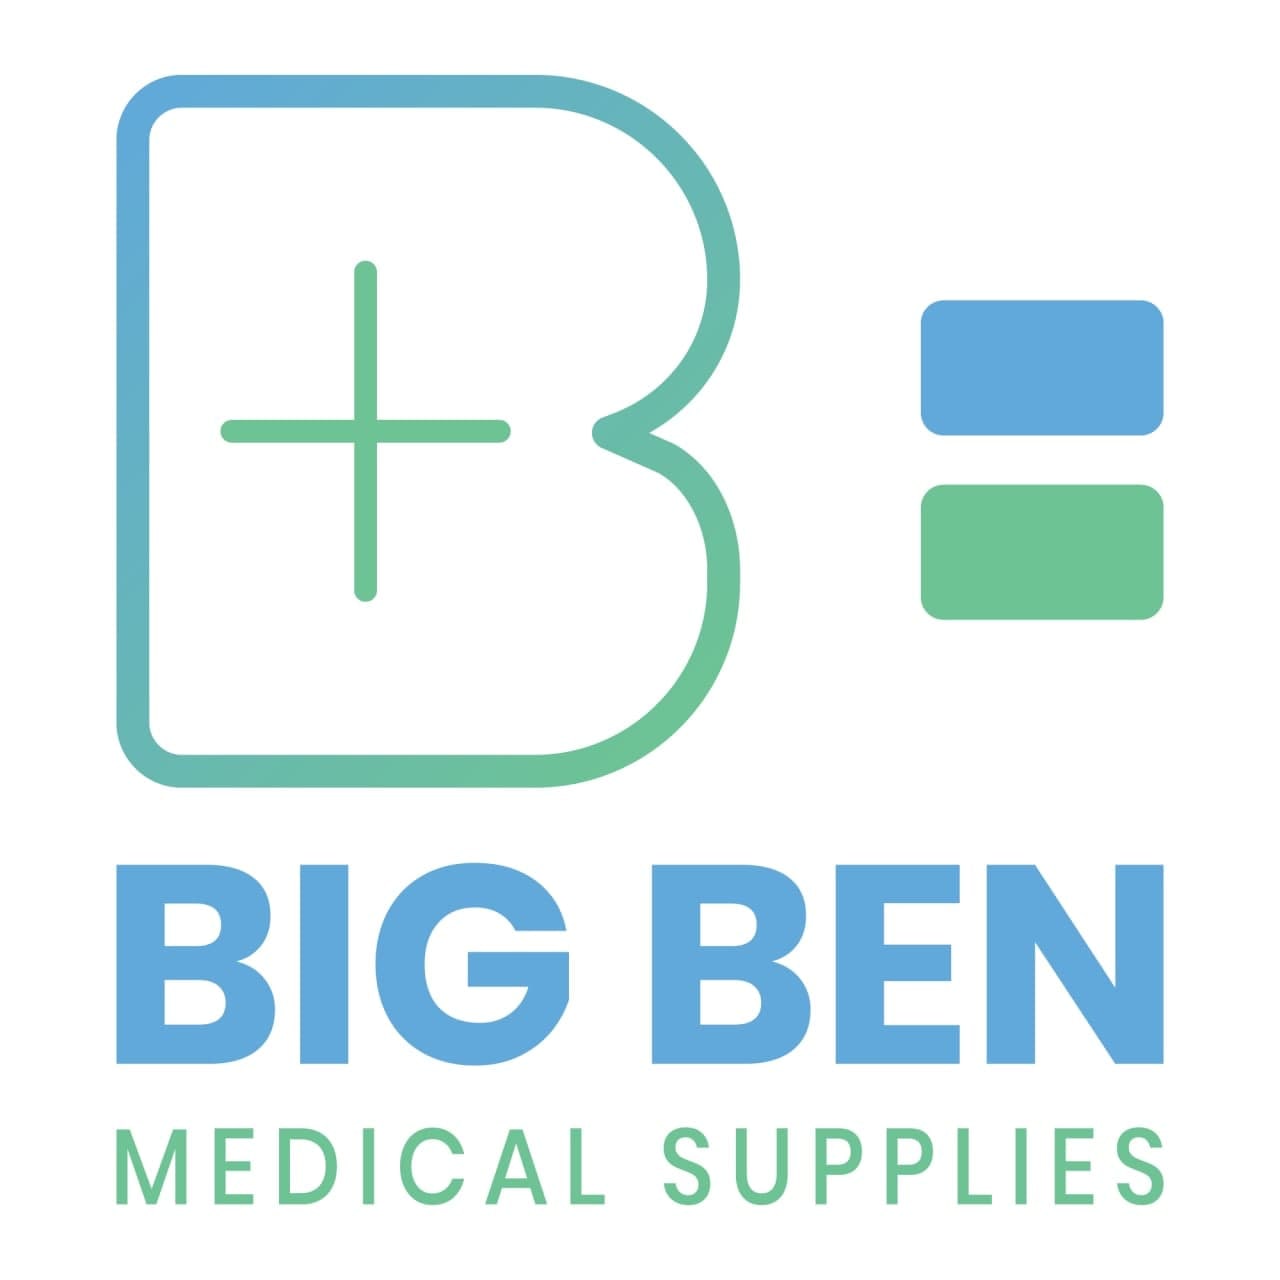 Bigben Medical